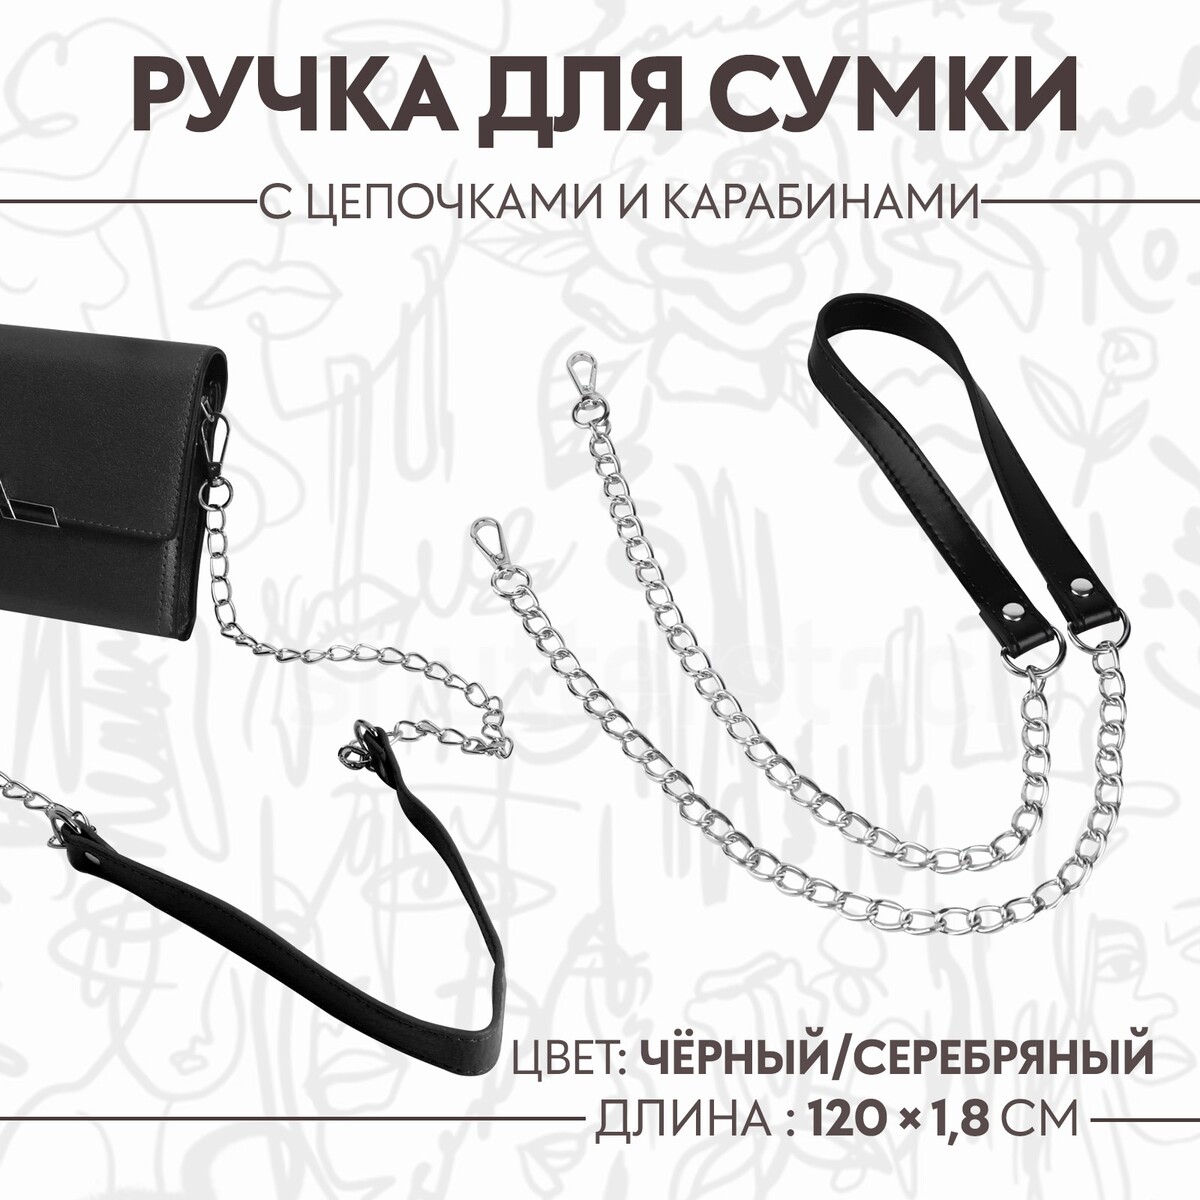 Ручка для сумки, с цепочками и карабинами, 120 × 1,8 см, цвет черный ручка для сумки с карабинами 60 ± 1 см × 2 см серый